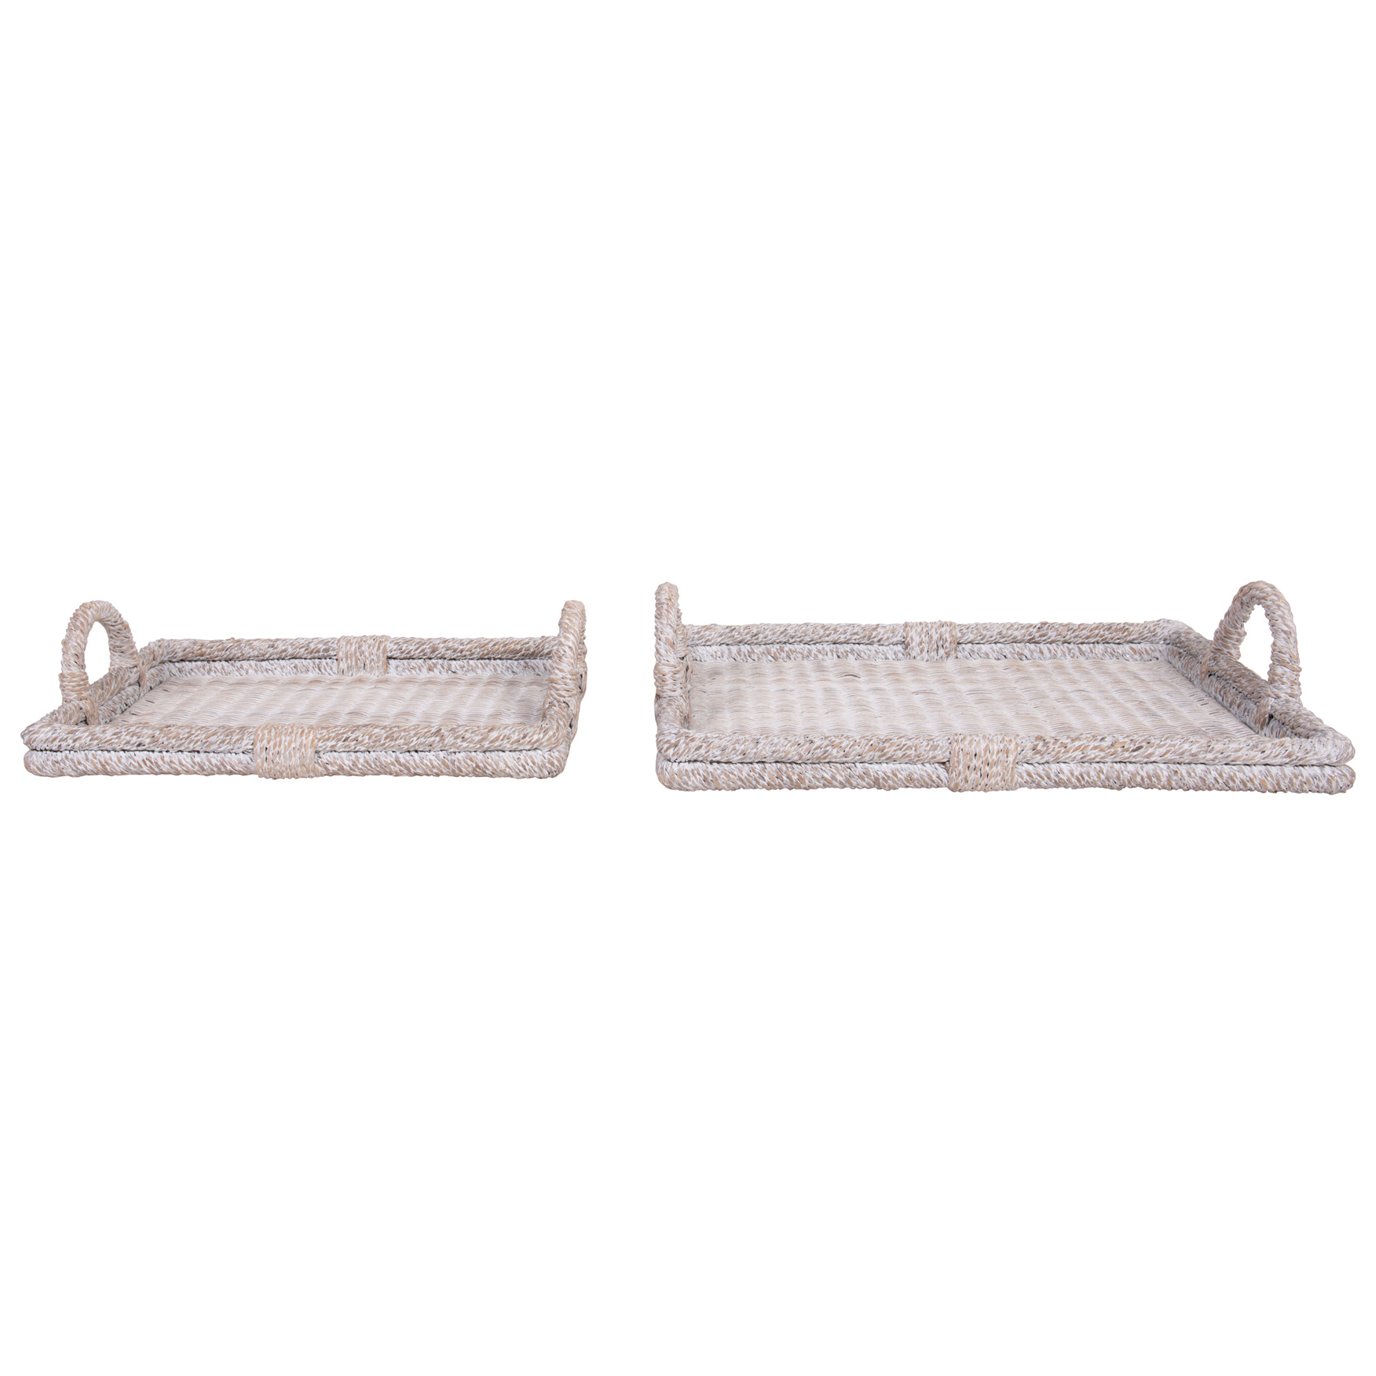 Decorative Rattan Trays with Handles & Whitewashed Finish (Set of 2 Sizes)